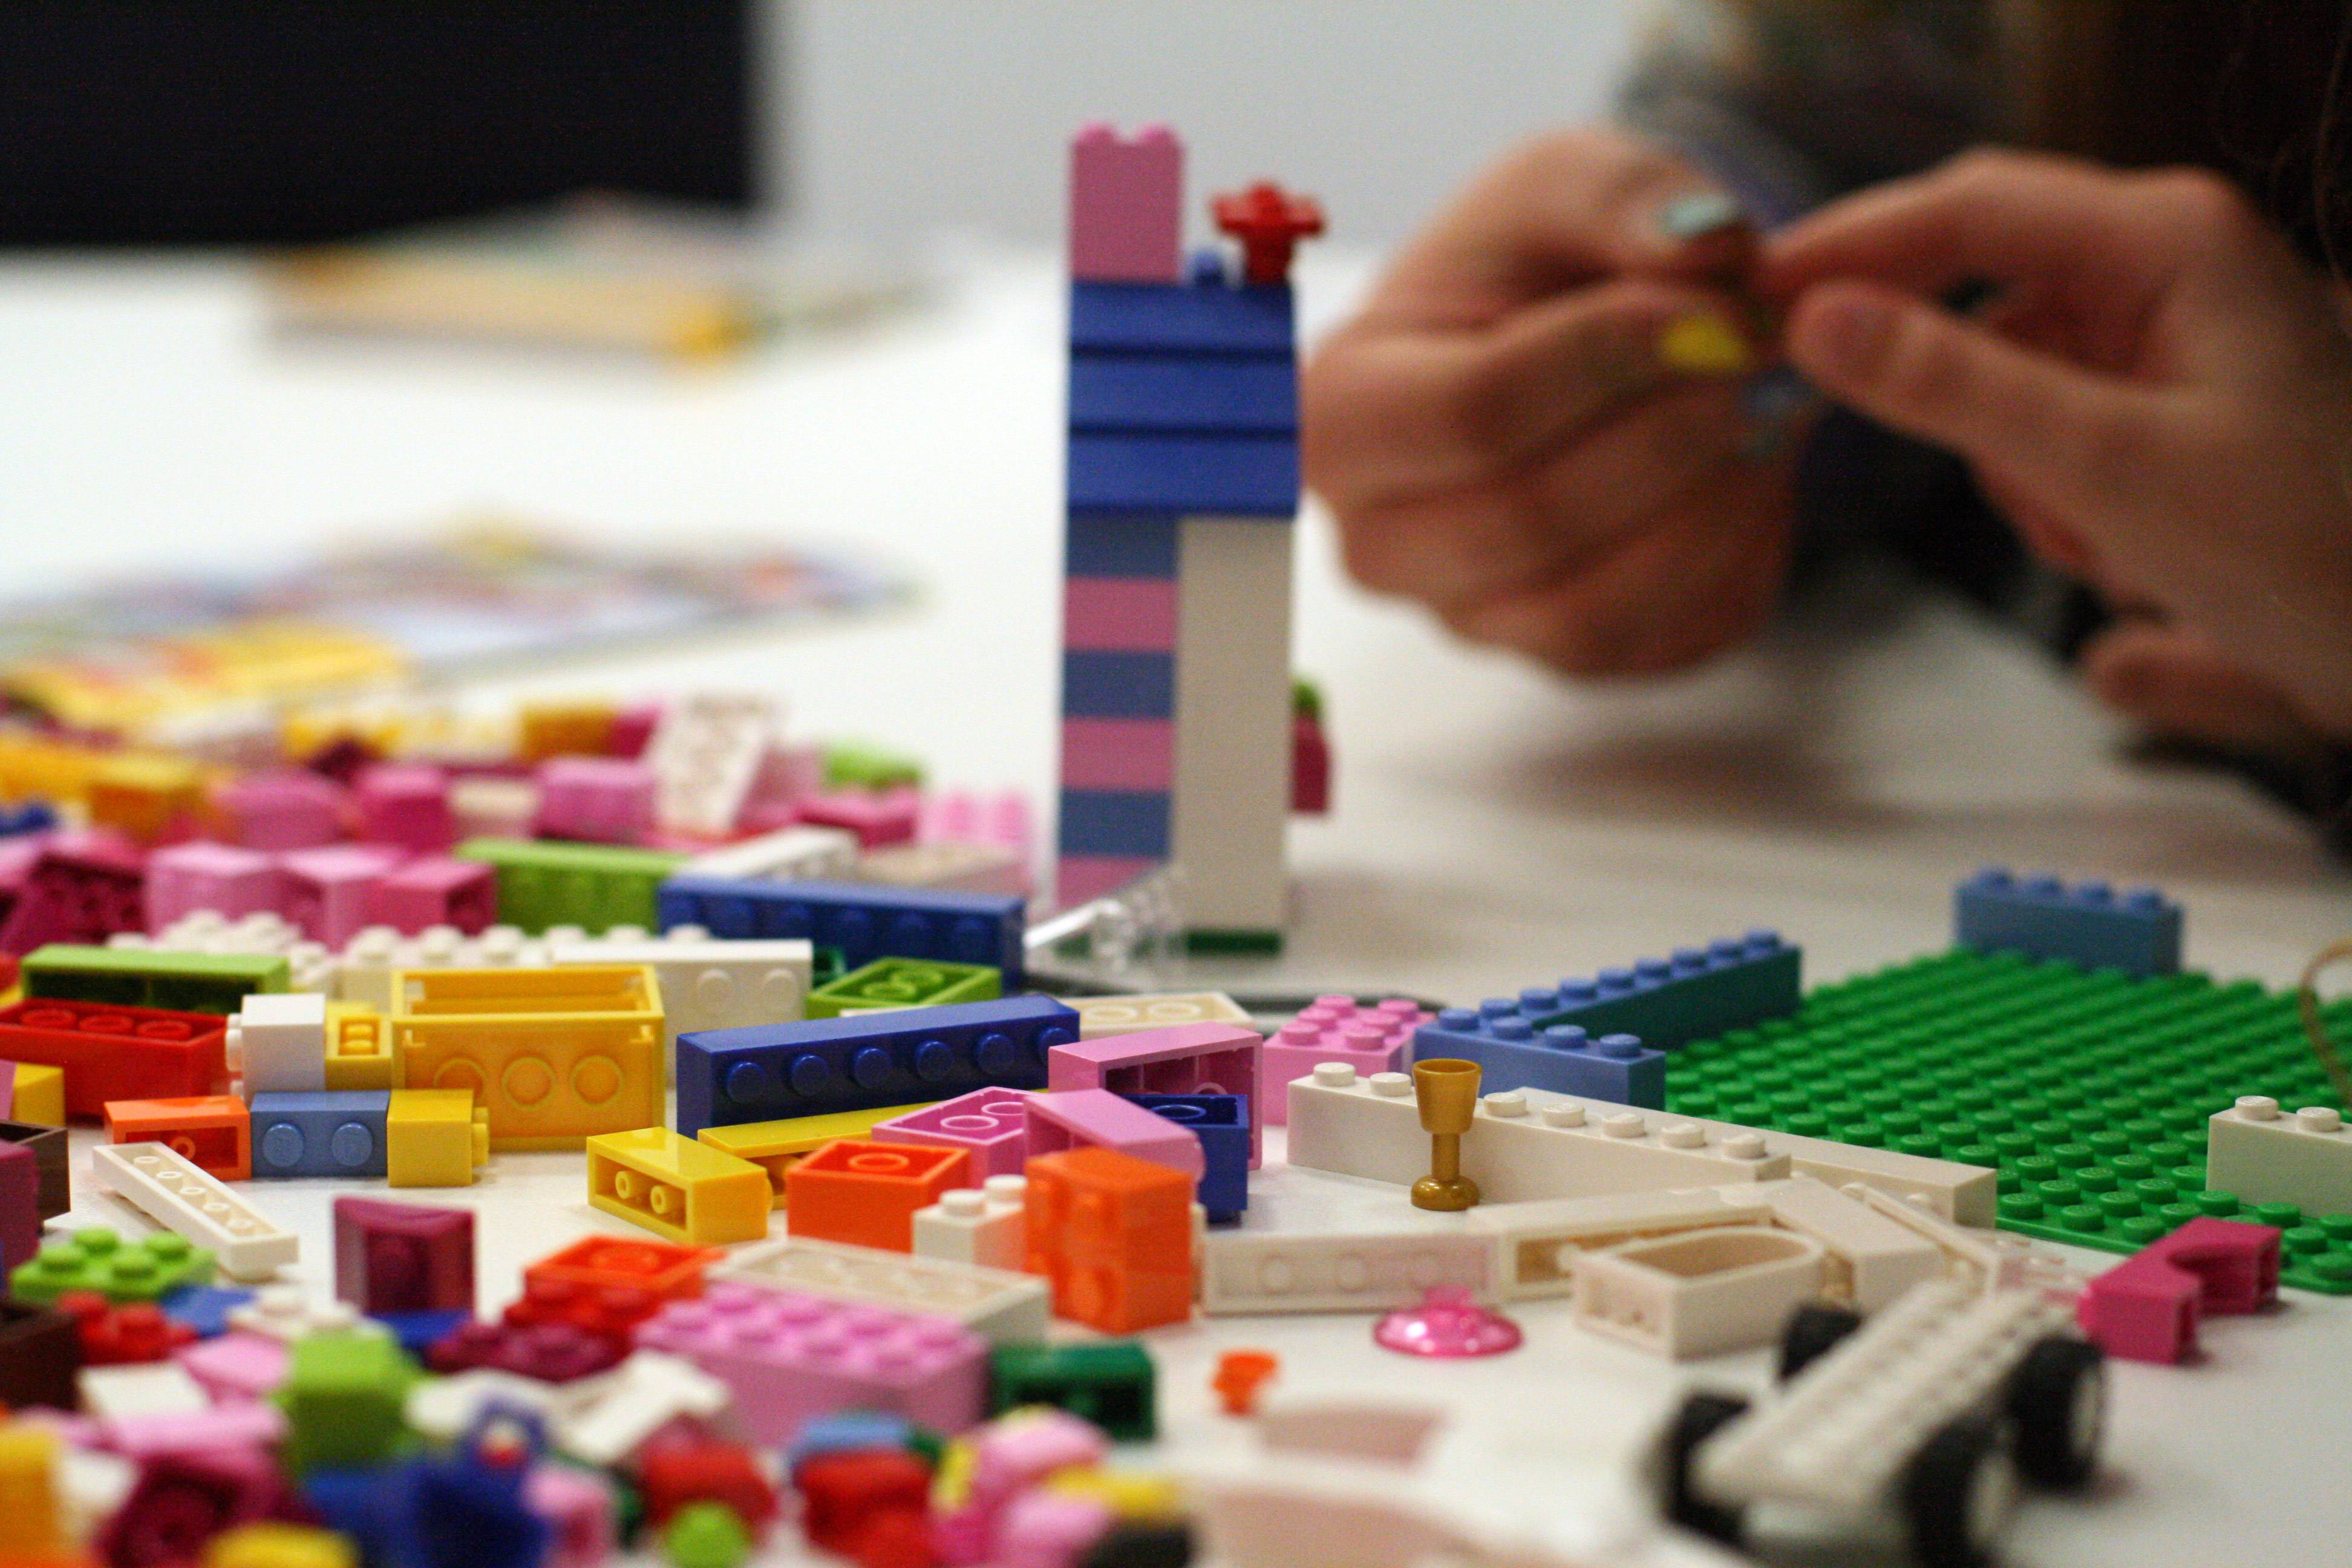 Radionica Lego 2. travnja 2012.